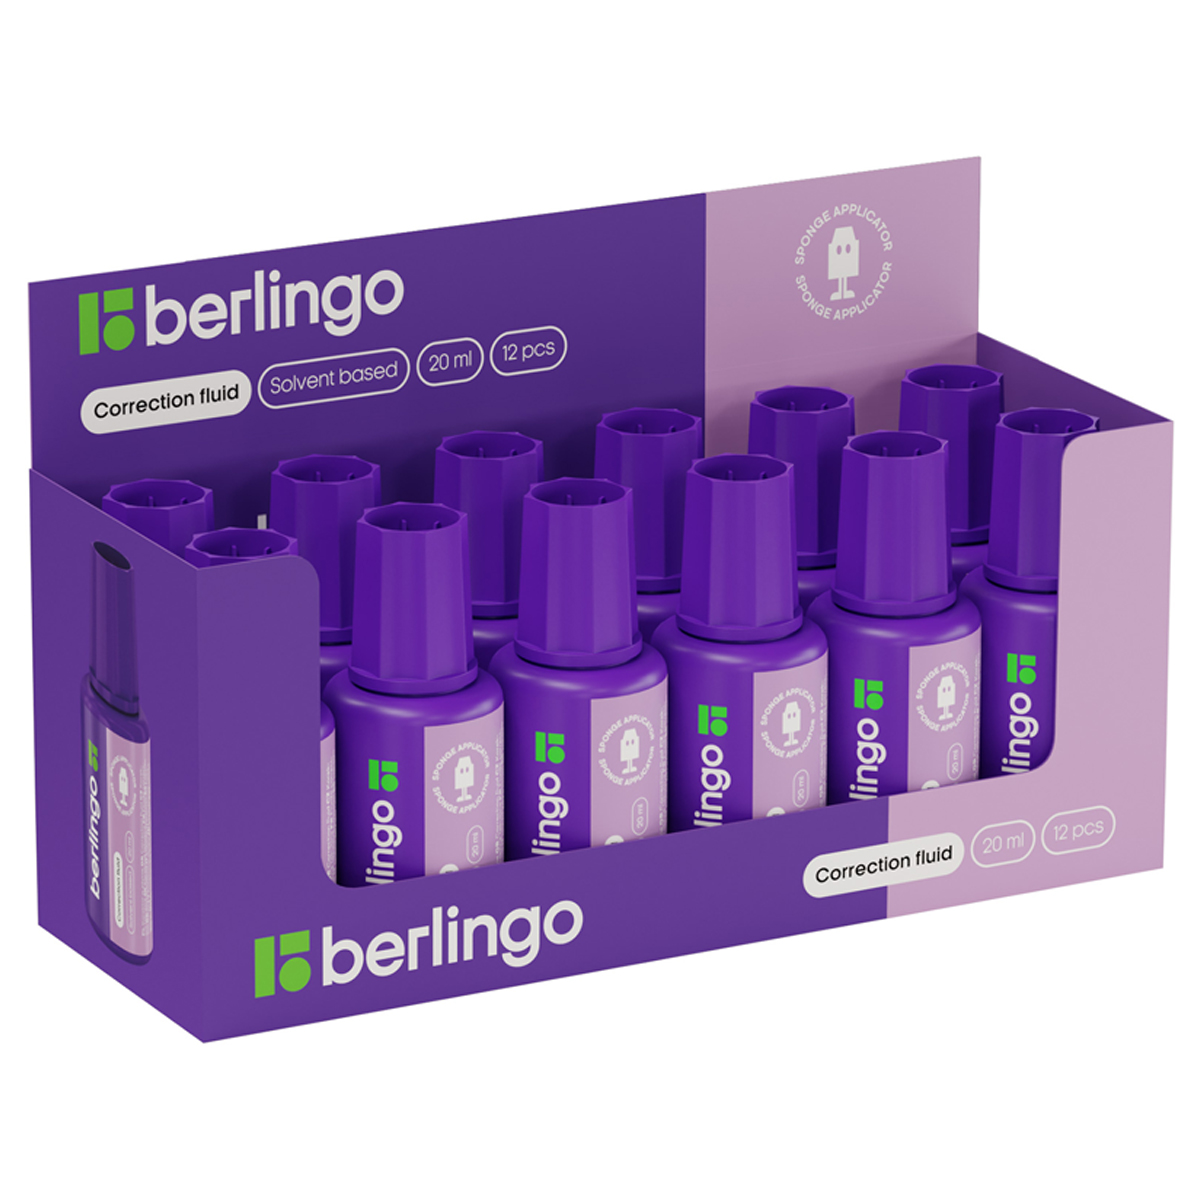 Корректирующая жидкость Berlingo, 20мл, на химической основе, с губчатым аппликатором